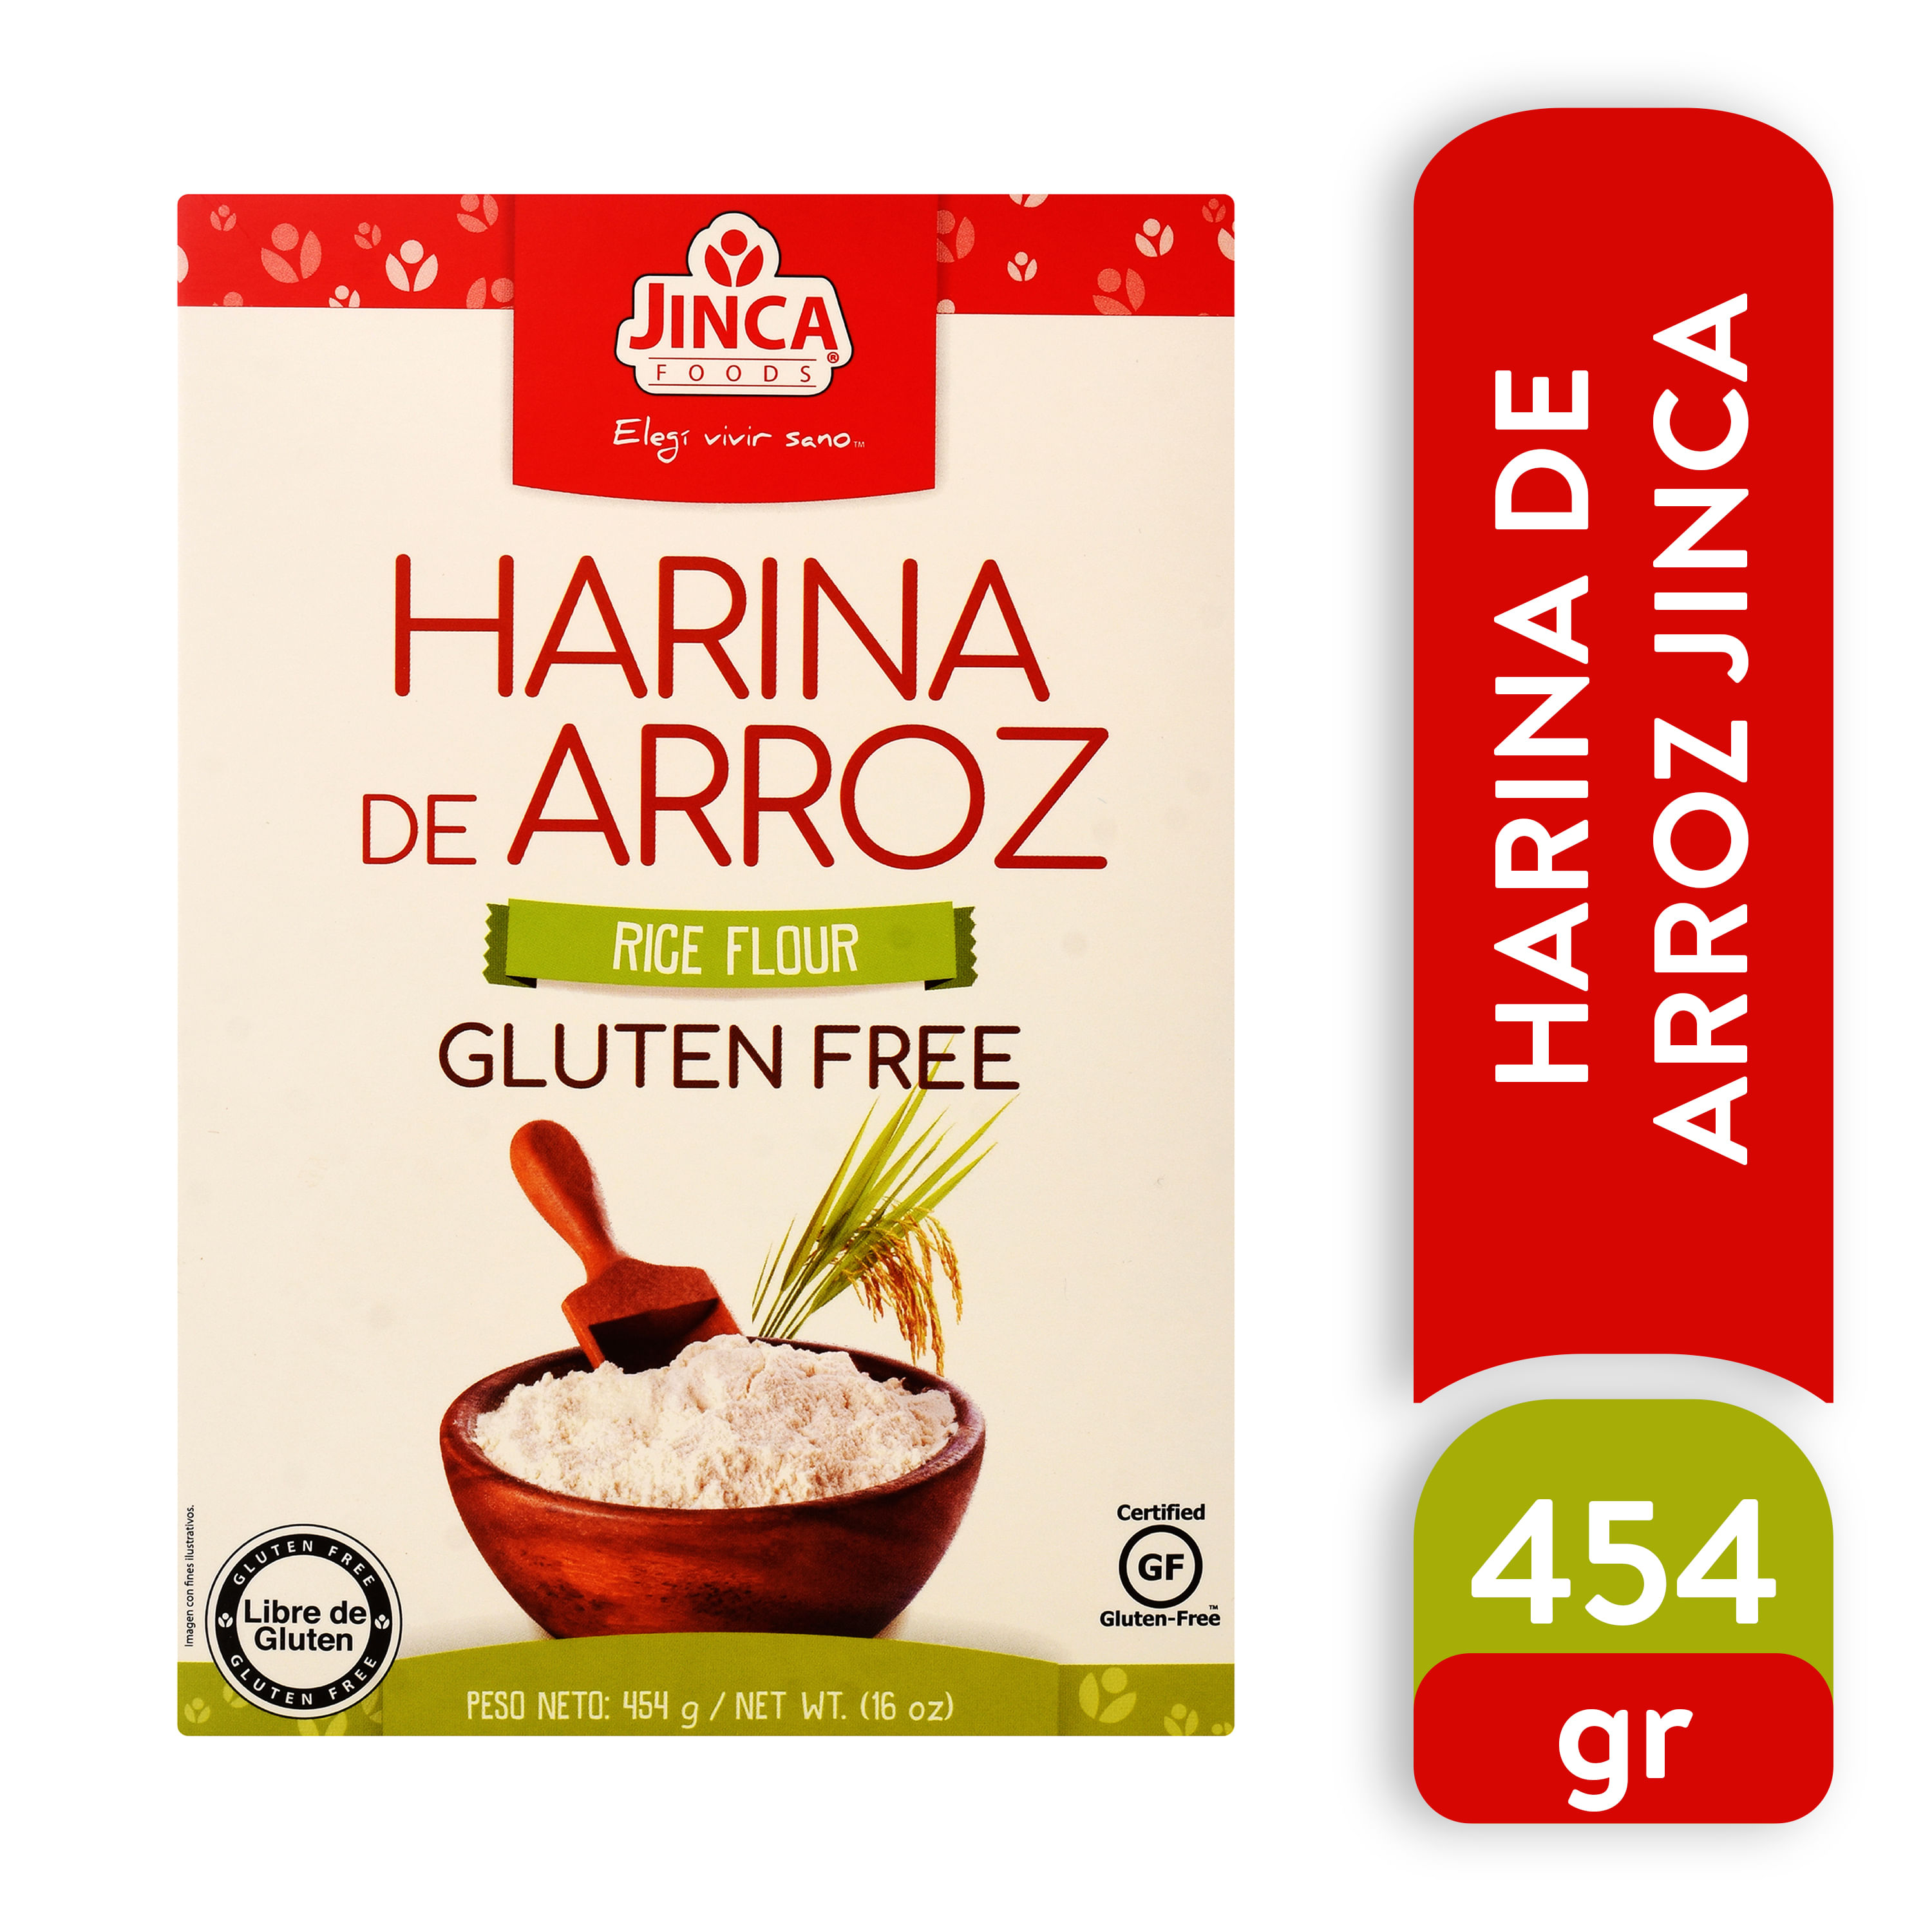 Harina de arroz - Ideal para rebozados y repostería - Nomen